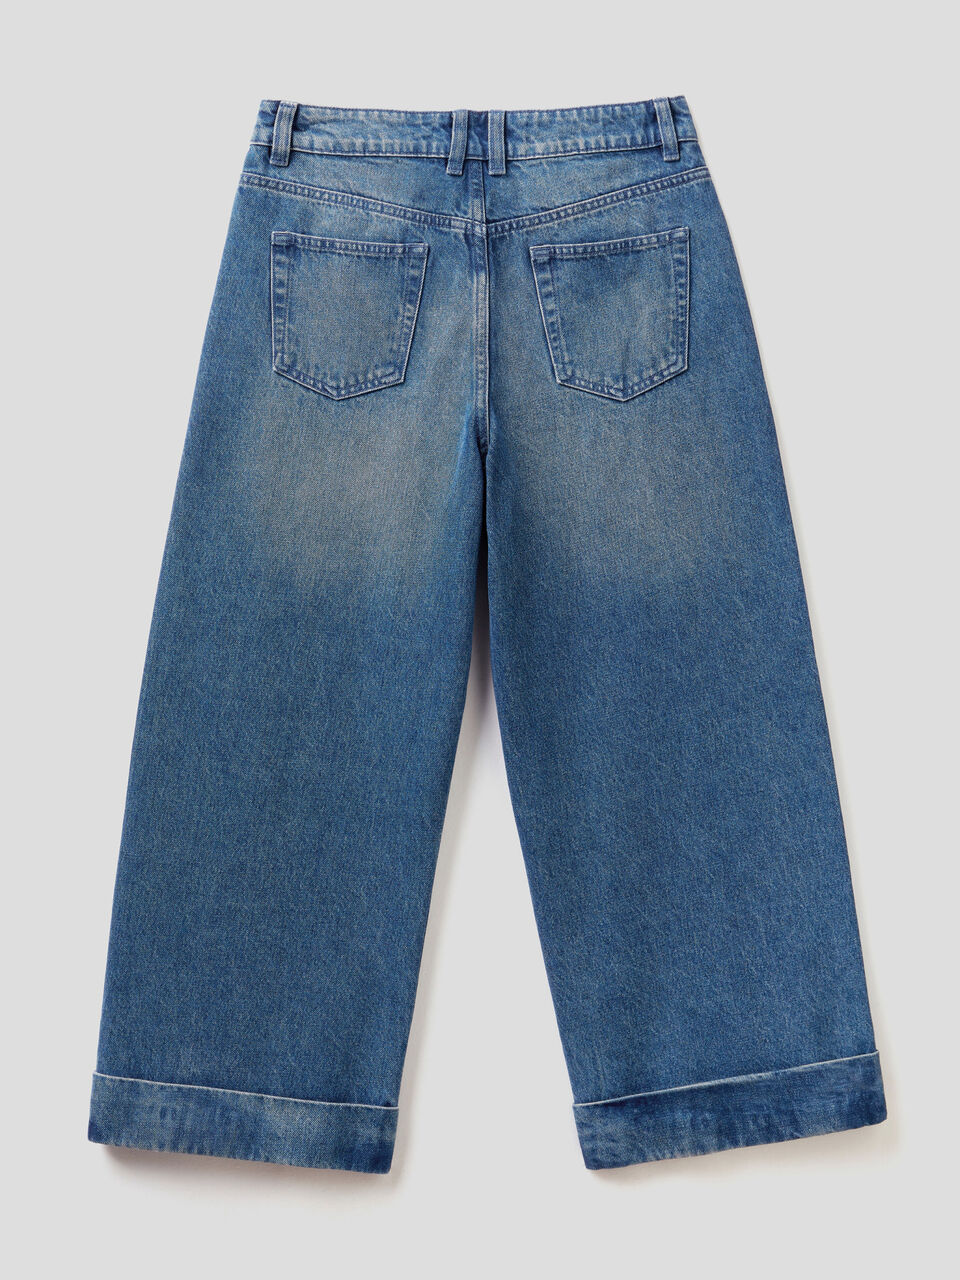 Filt Net Bag Jeans Blue – Short Handles – Elenfhant